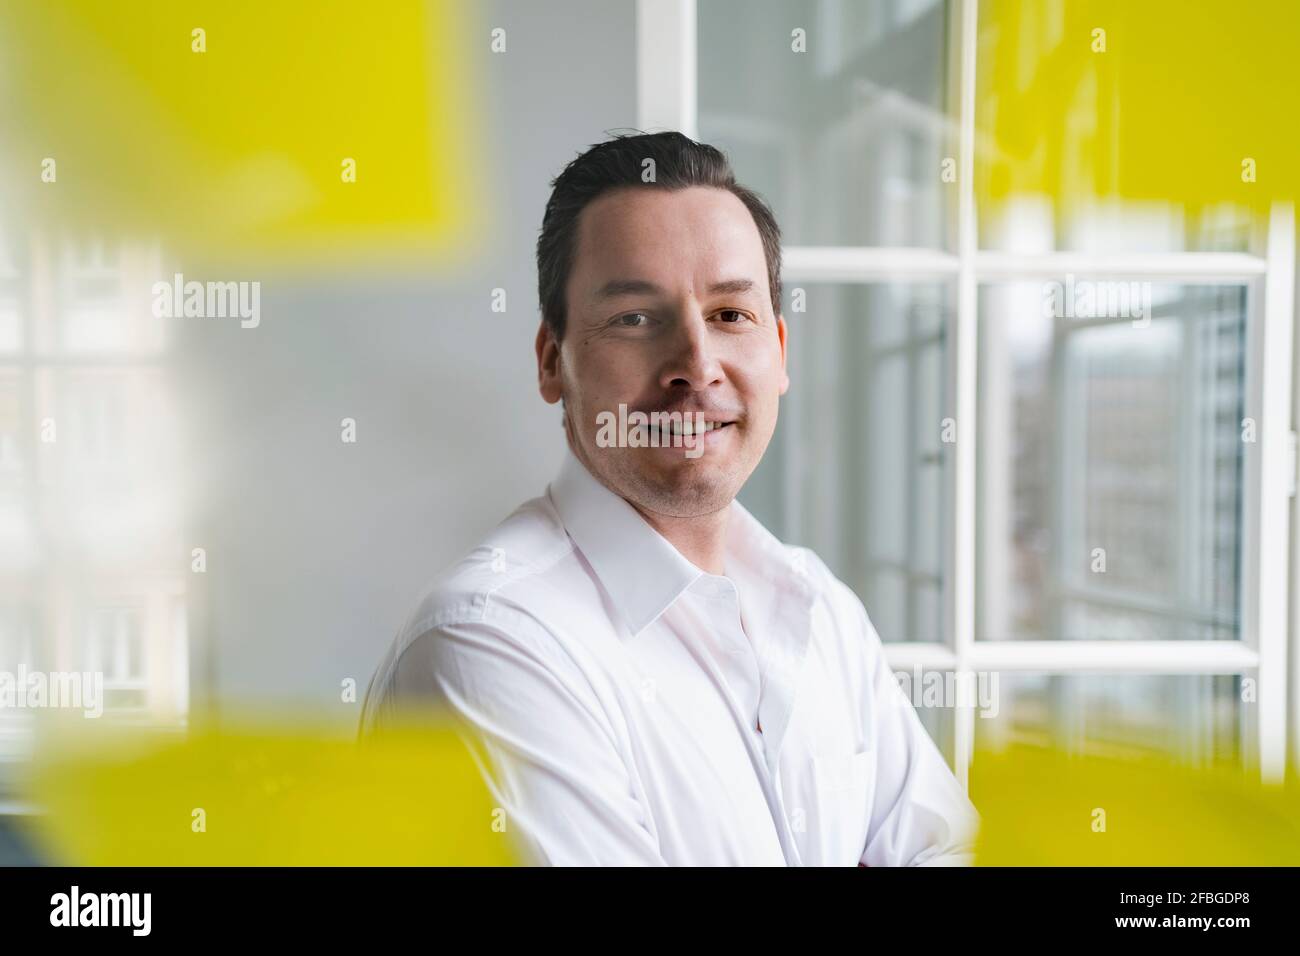 Lächelnder Geschäftsmann, der am Arbeitsplatz durch ein transparentes Wipe Board schaut Stockfoto